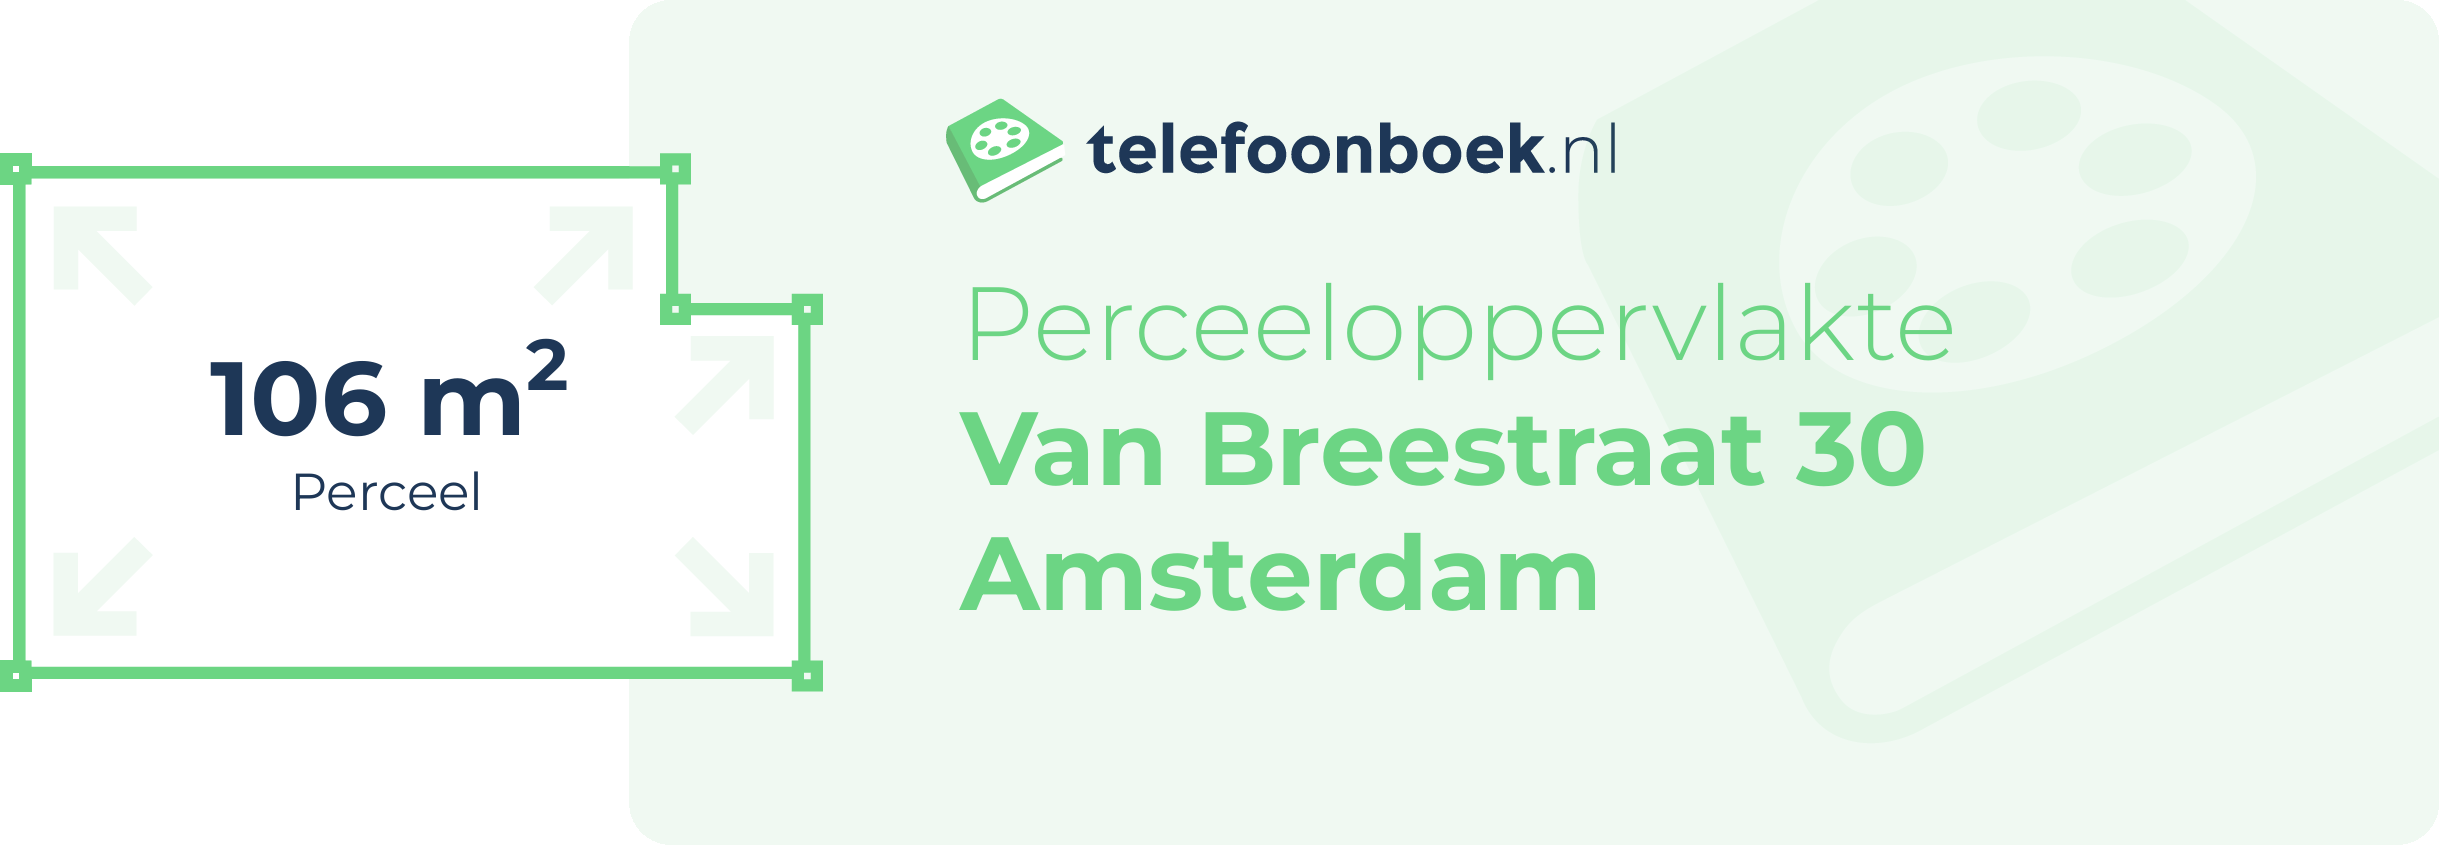 Perceeloppervlakte Van Breestraat 30 Amsterdam